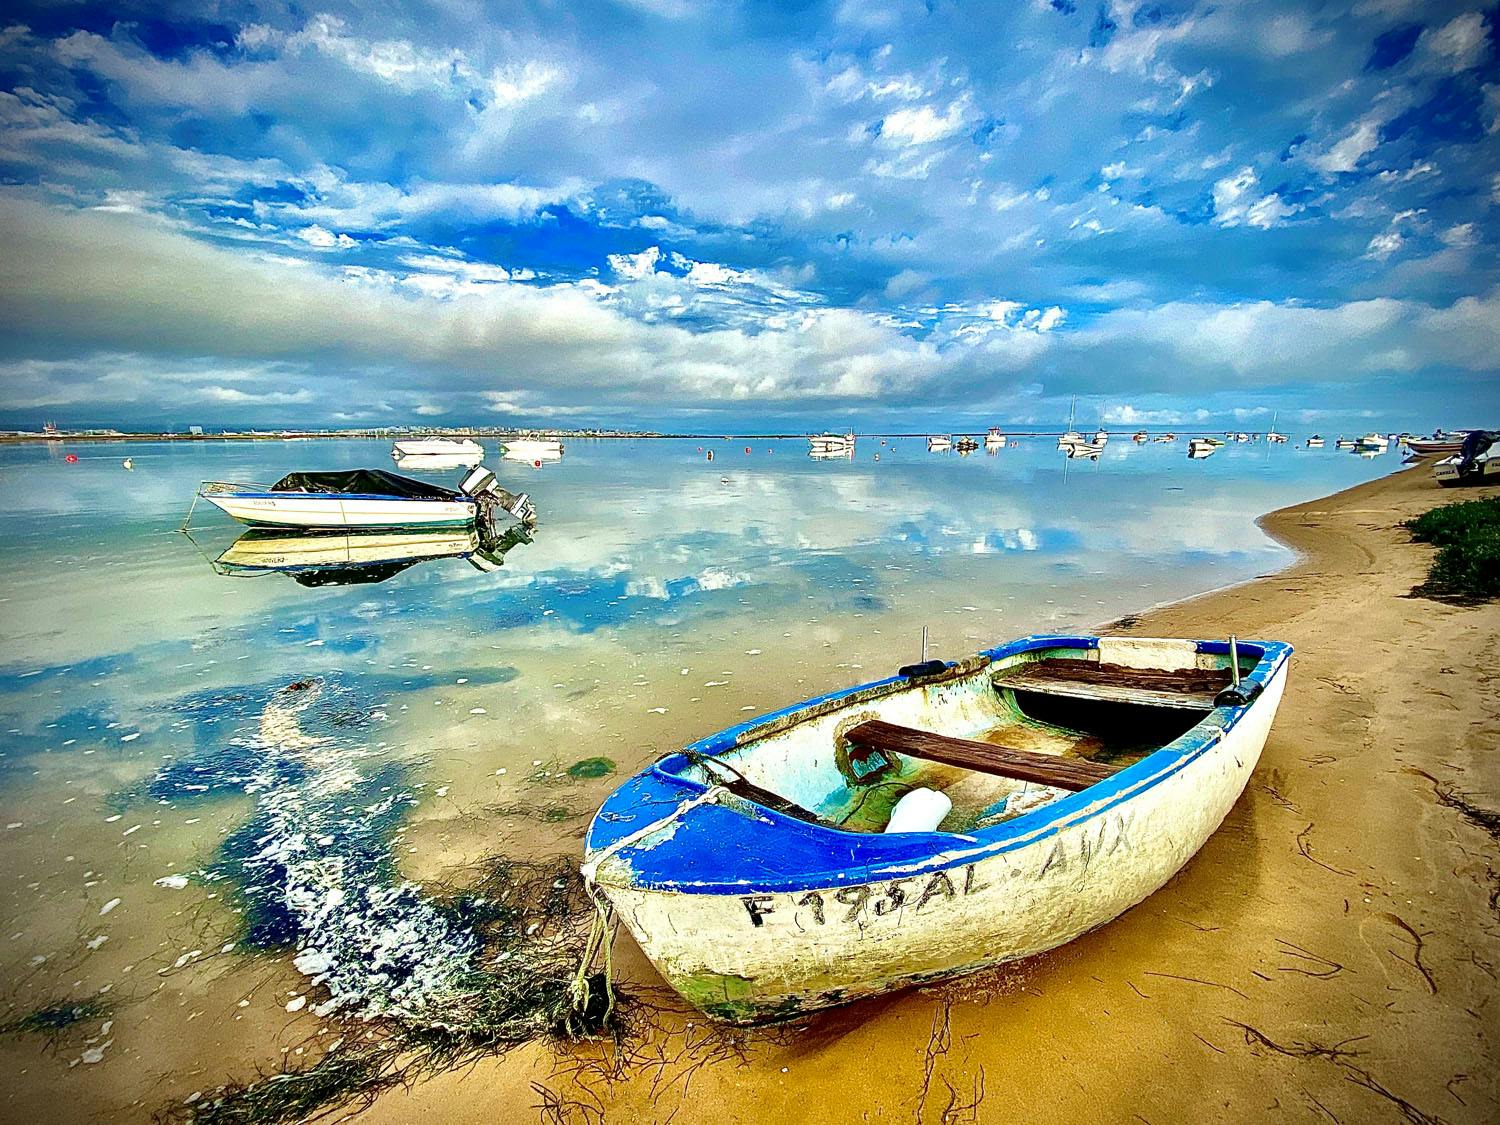 Algarve - Atlantic ocean and boats